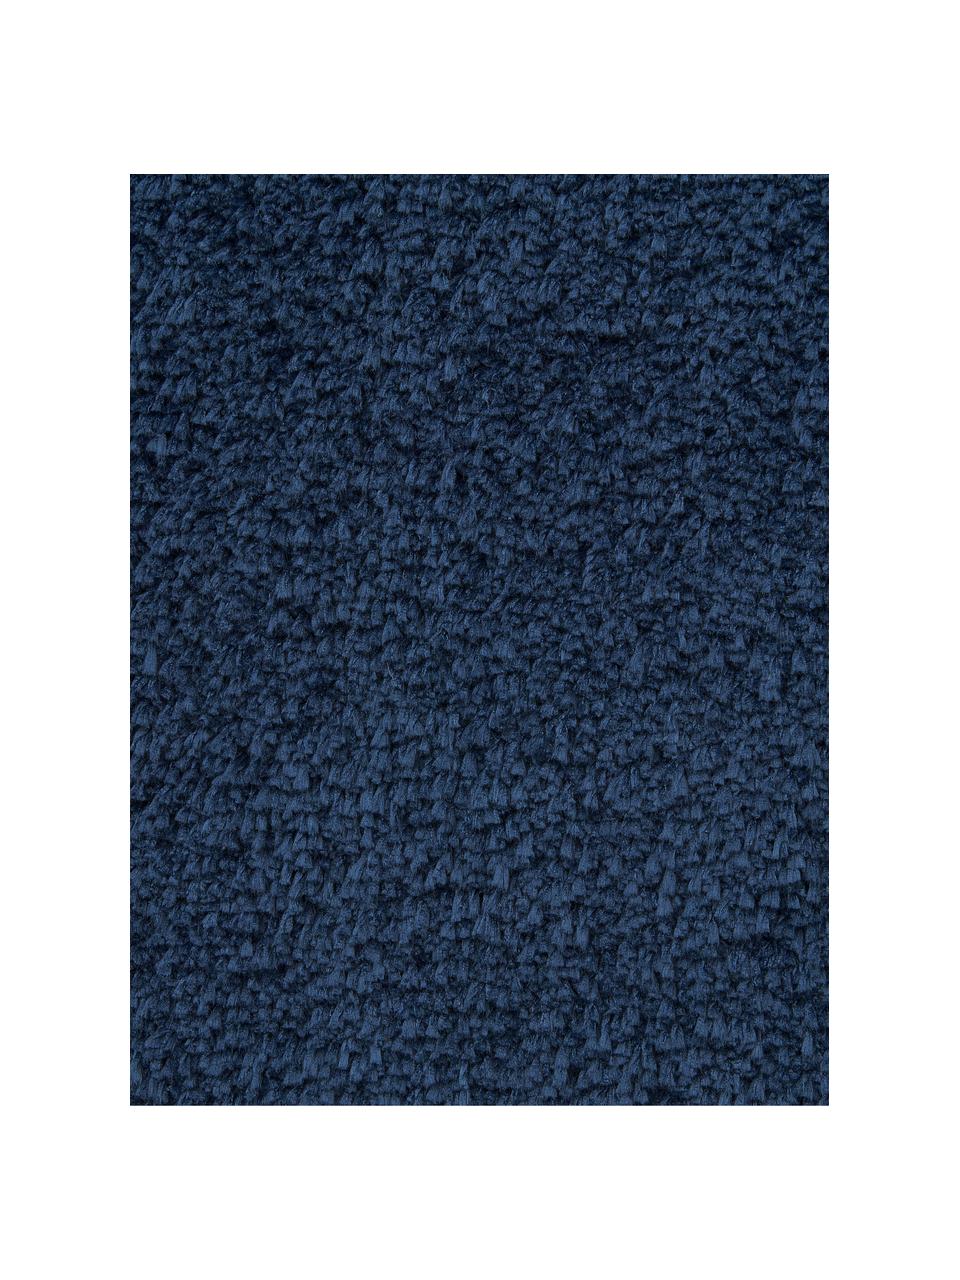 Tapis rond moelleux à poils longs Leighton, Bleu foncé, Ø 120 cm (taille S)